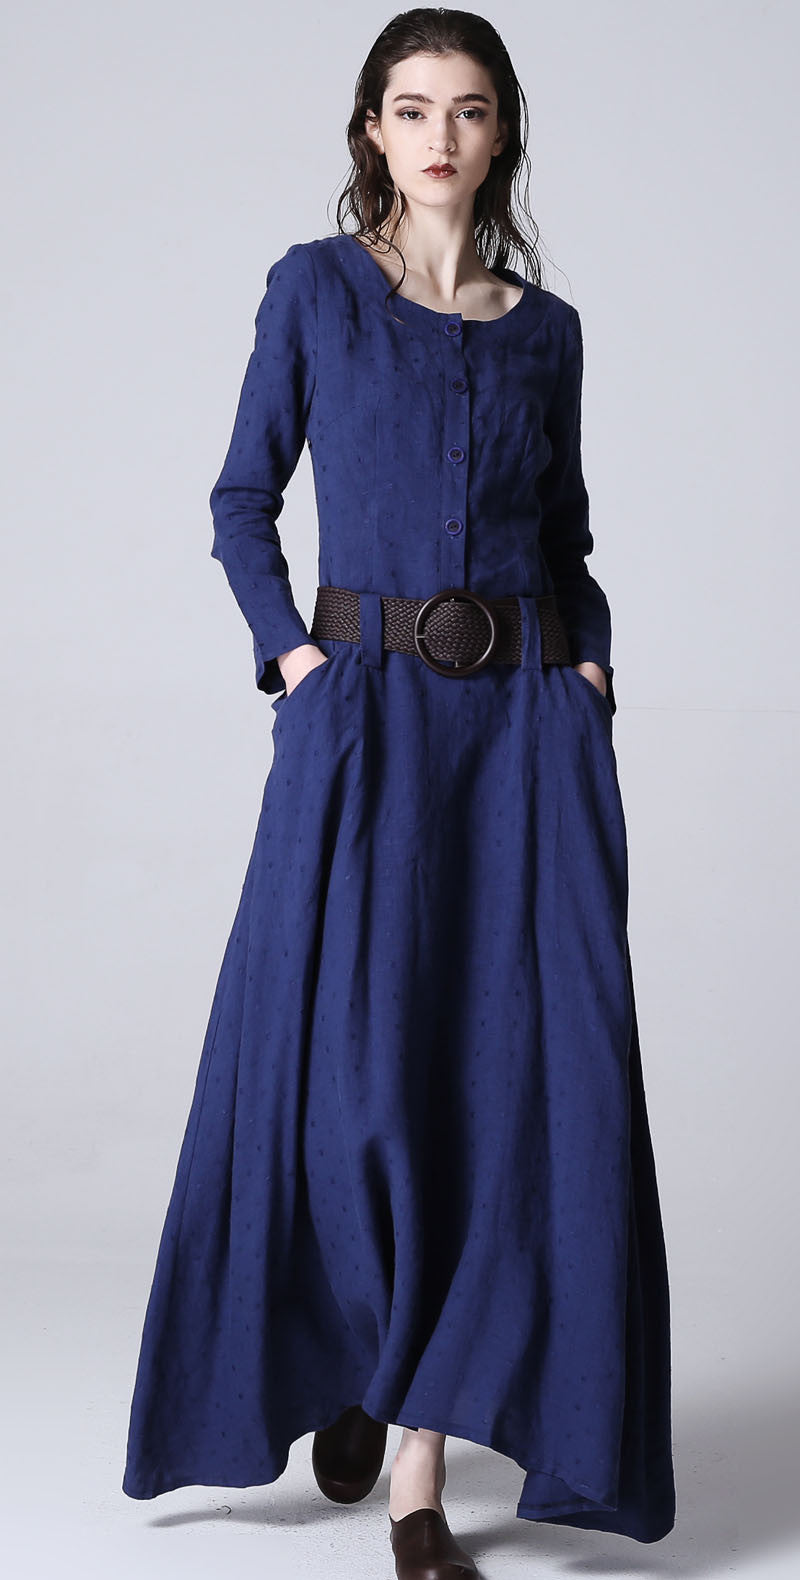 Blue dress maxi linen dress casual dress women dress 1183#